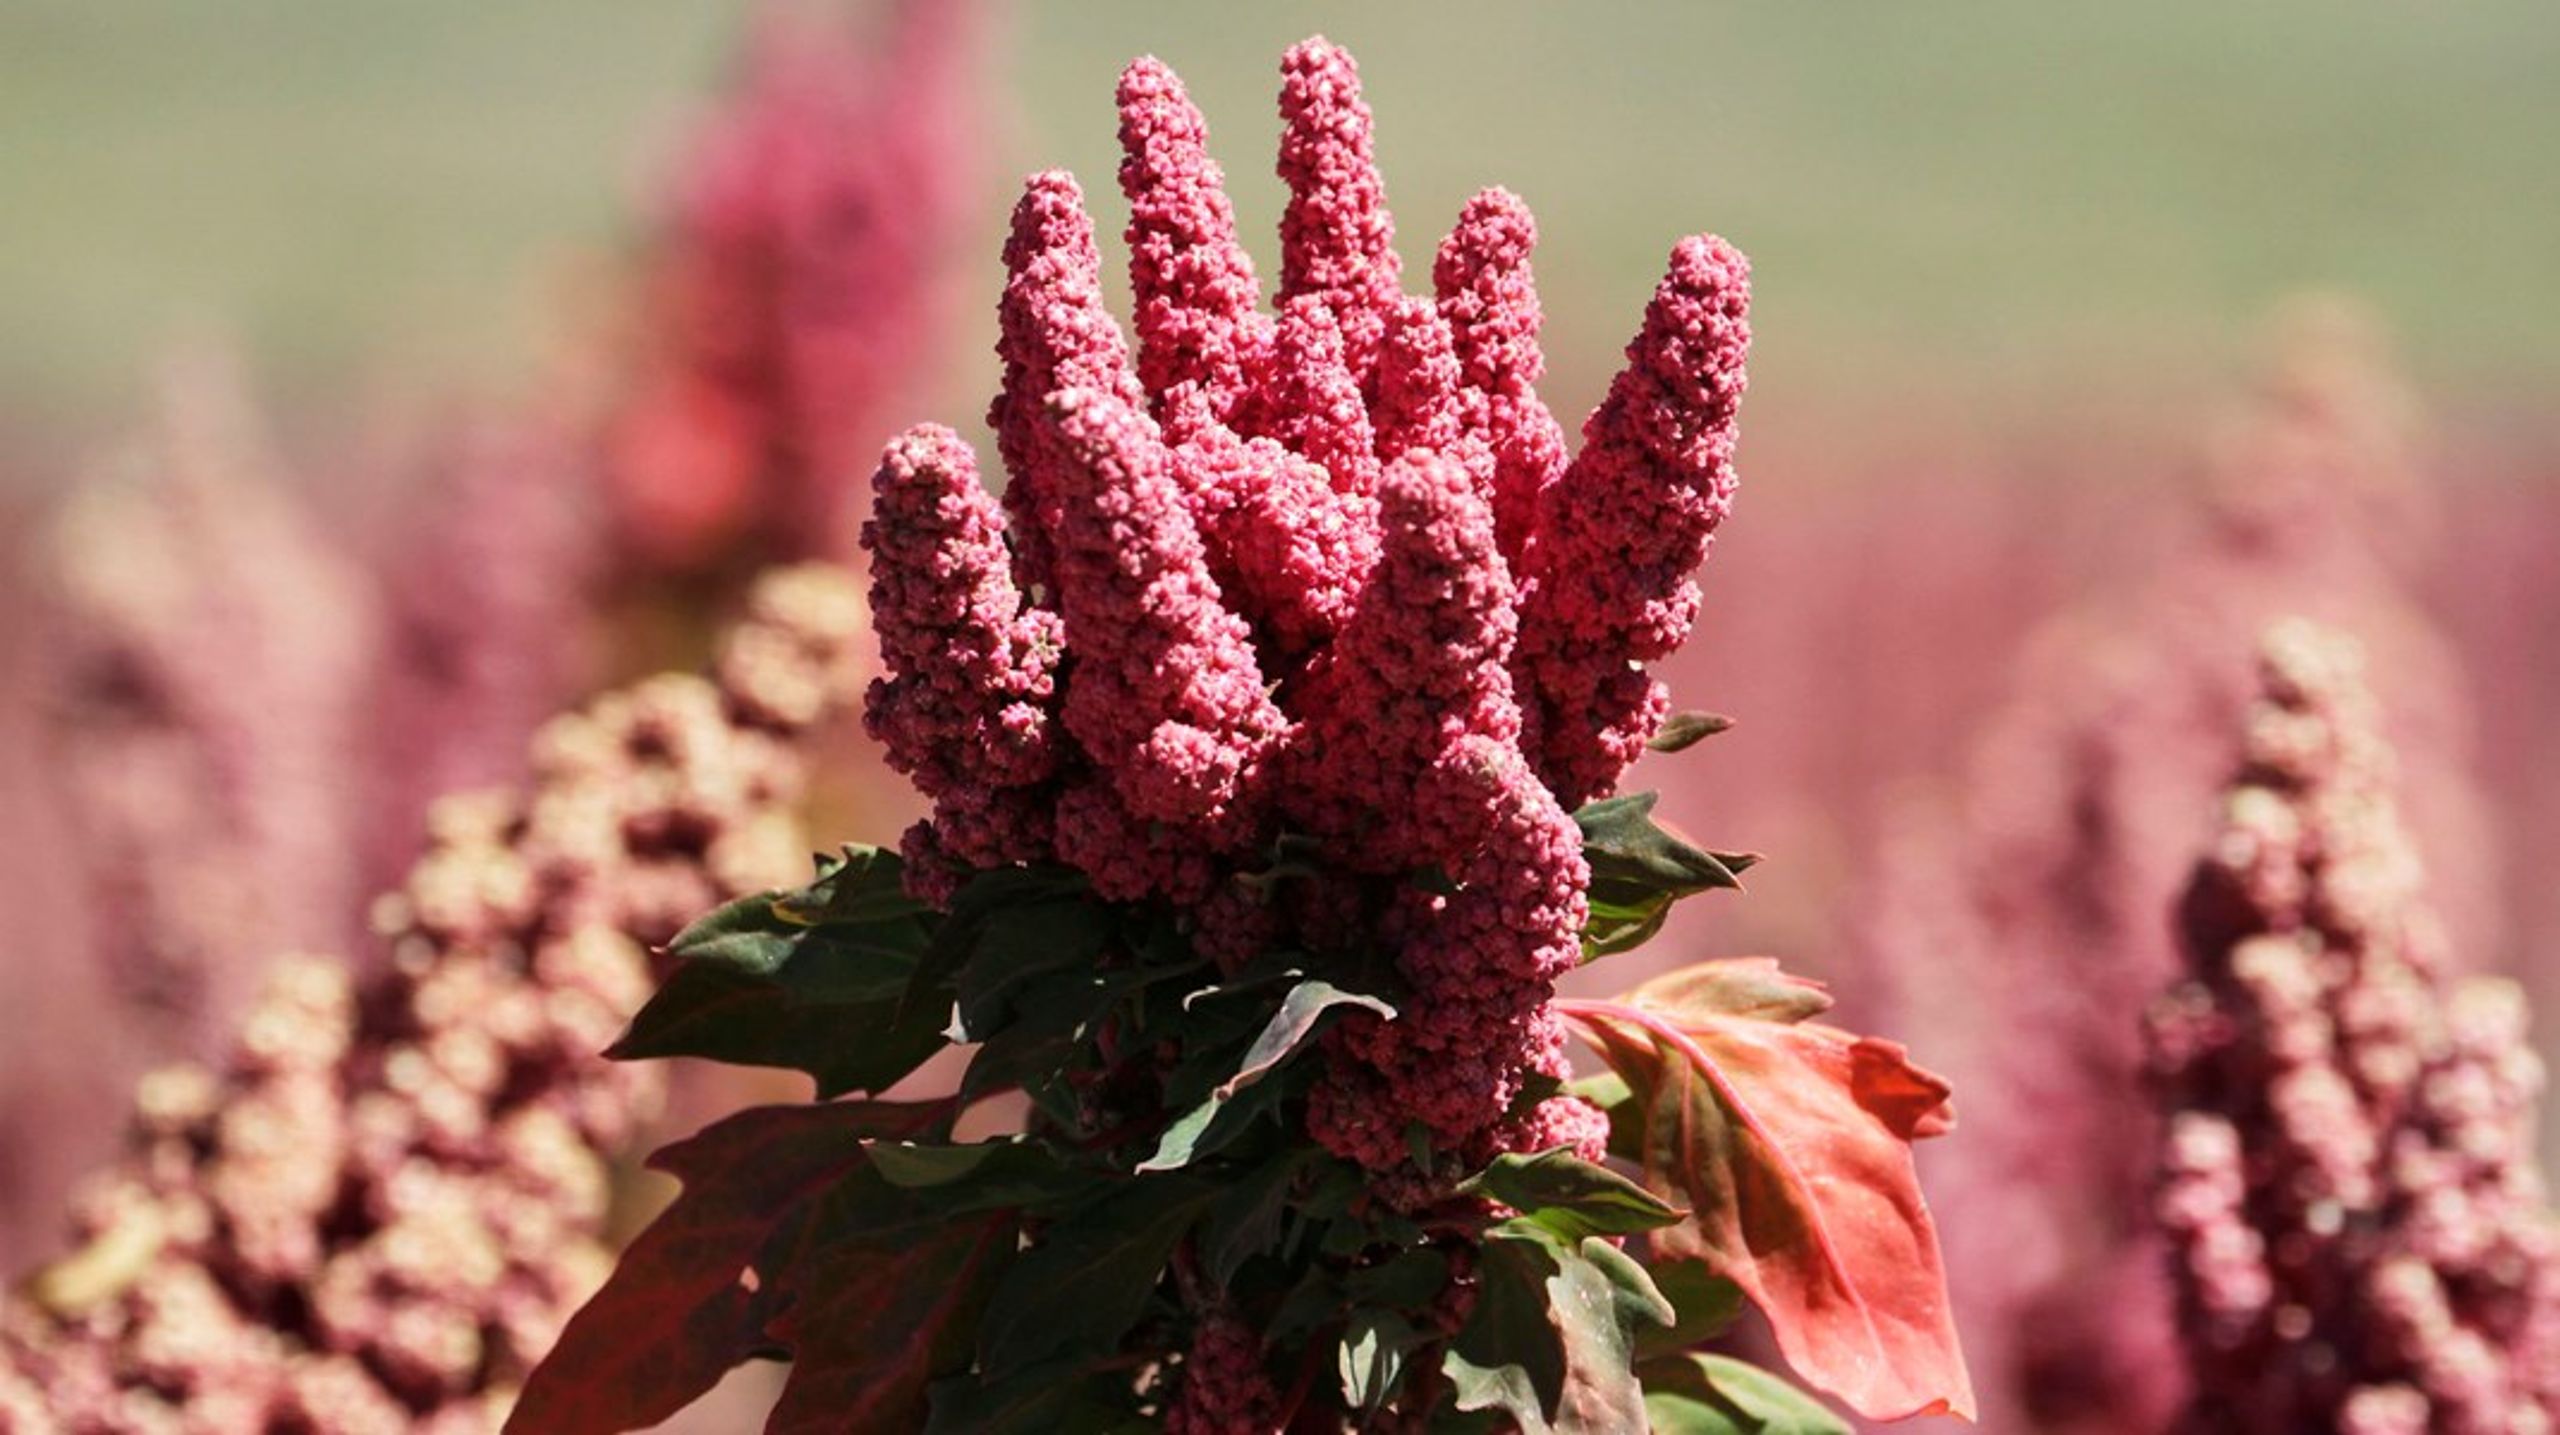 Den proteinrige quinoa er en af de plantebaserede fødevarer, som har fået en del opmærksomhed de seneste år, og som flere danske landmænd allerede i dag producerer.